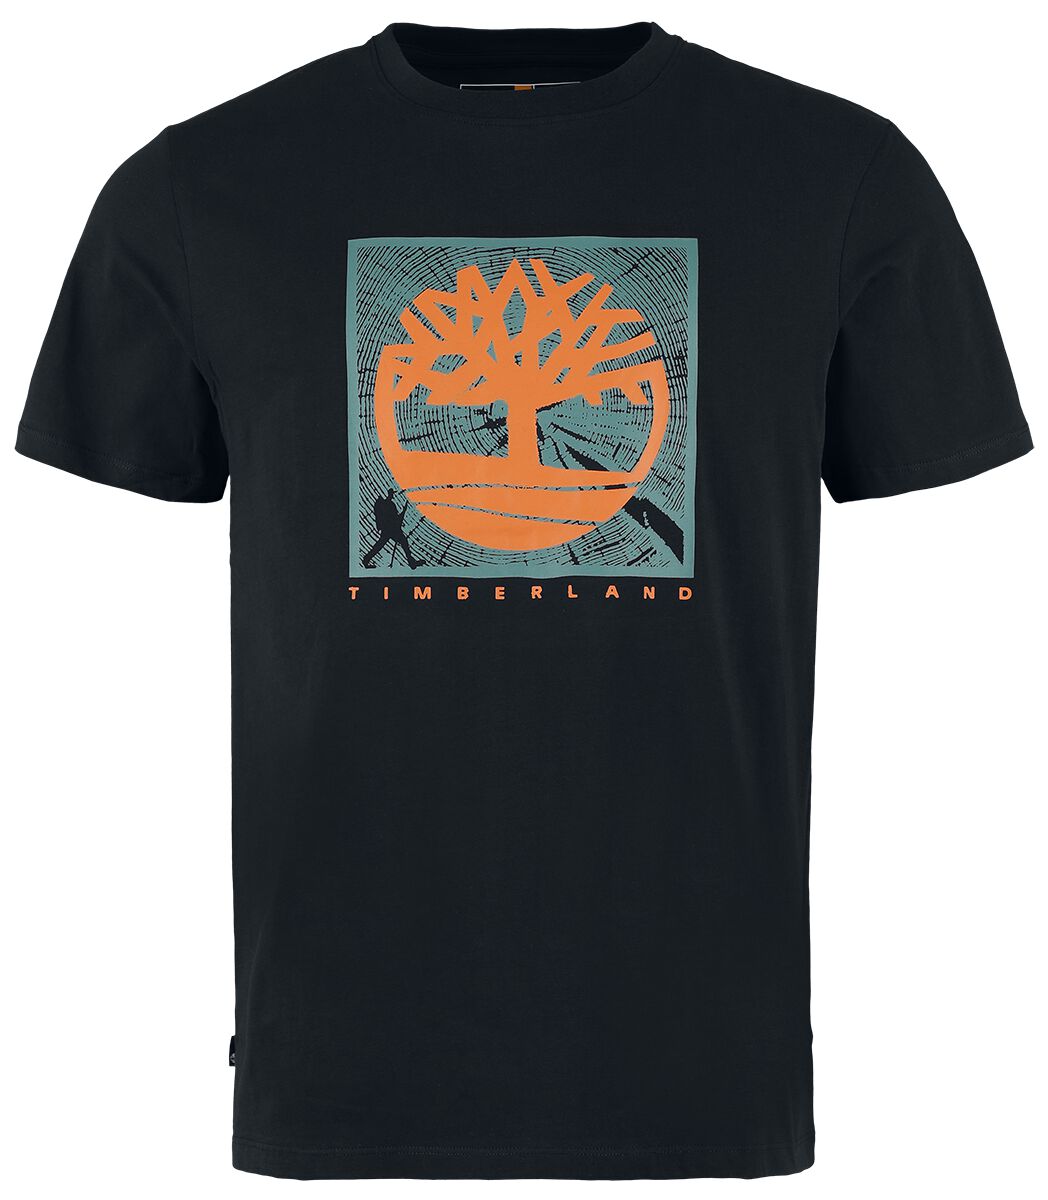 Timberland T-Shirt - Short Sleeve Front Graphic Tee - S bis XXL - für Männer - Größe S - schwarz